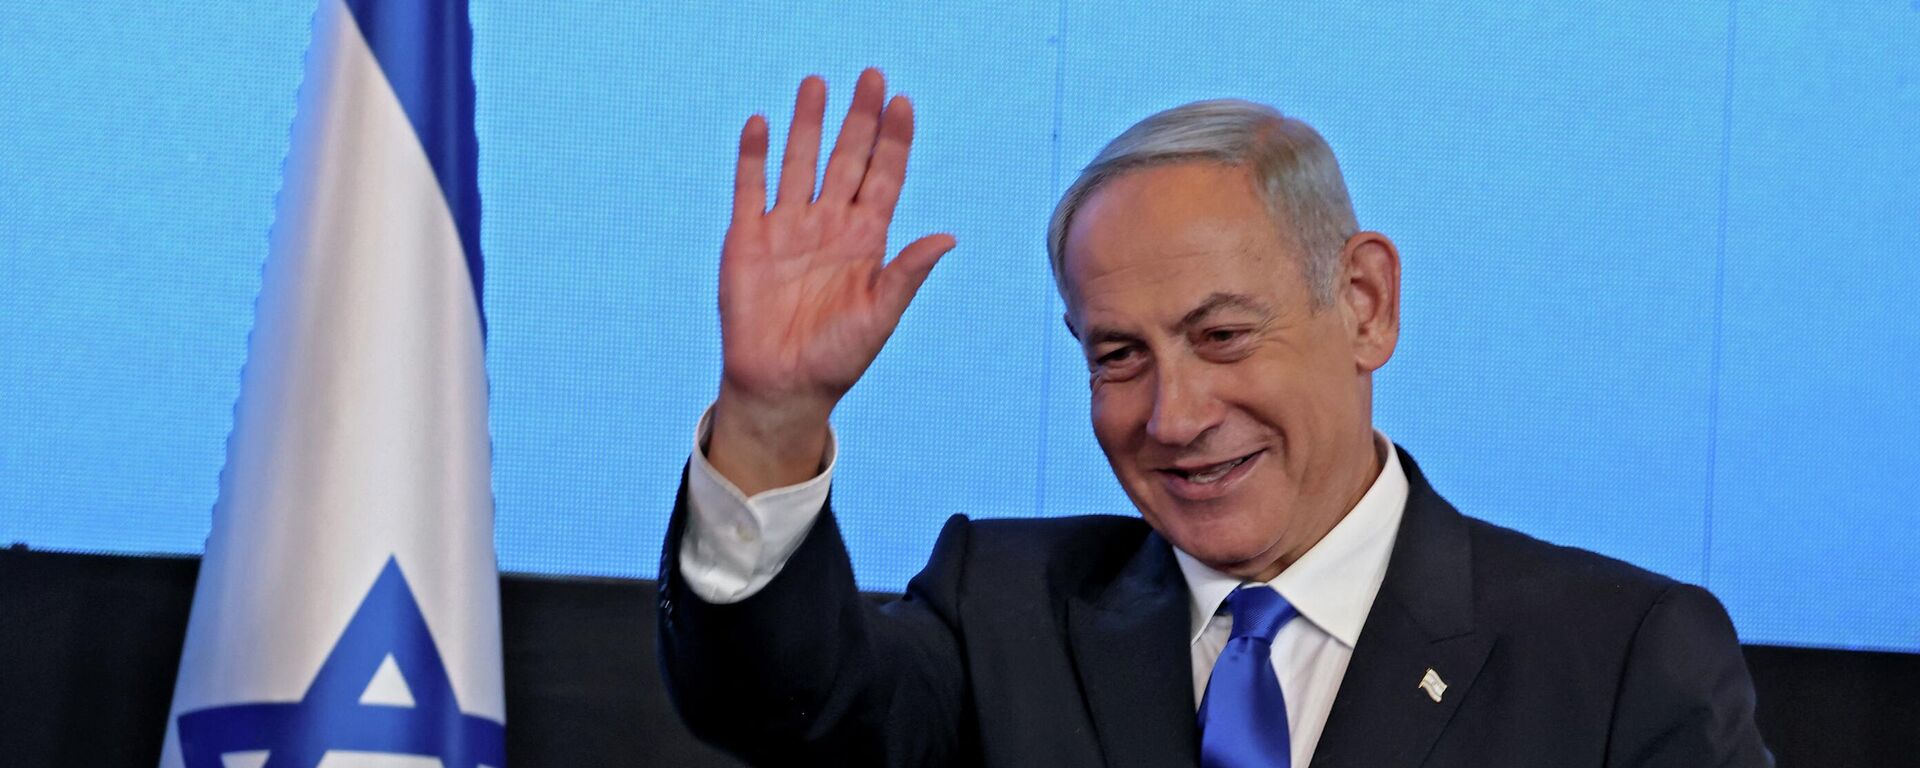 زعيم المعارضة الإسرائيلية بنيامين نتنياهو بعد فوزه في الانتخابات العامة في إسرائيل، نوفمبر/ تشرين الثاني 2022. - سبوتنيك عربي, 1920, 24.01.2023